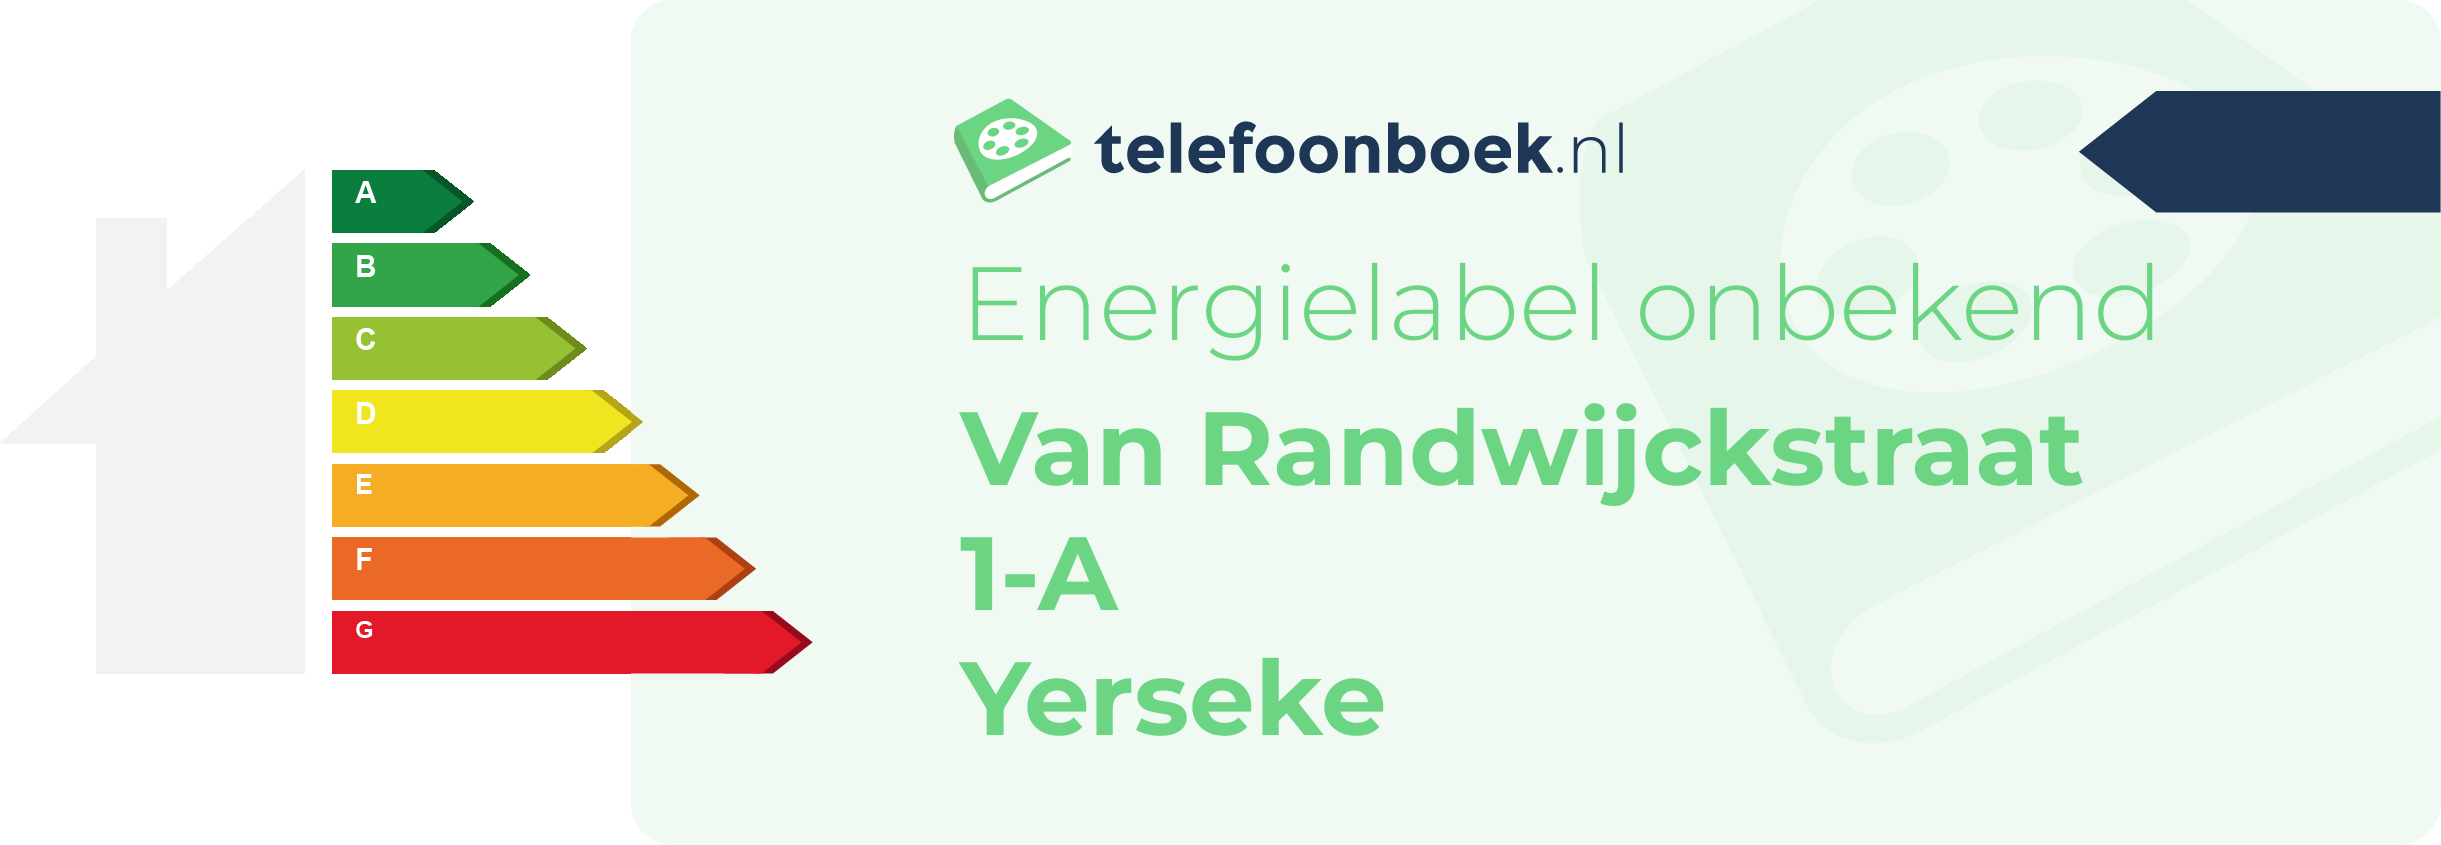 Energielabel Van Randwijckstraat 1-A Yerseke